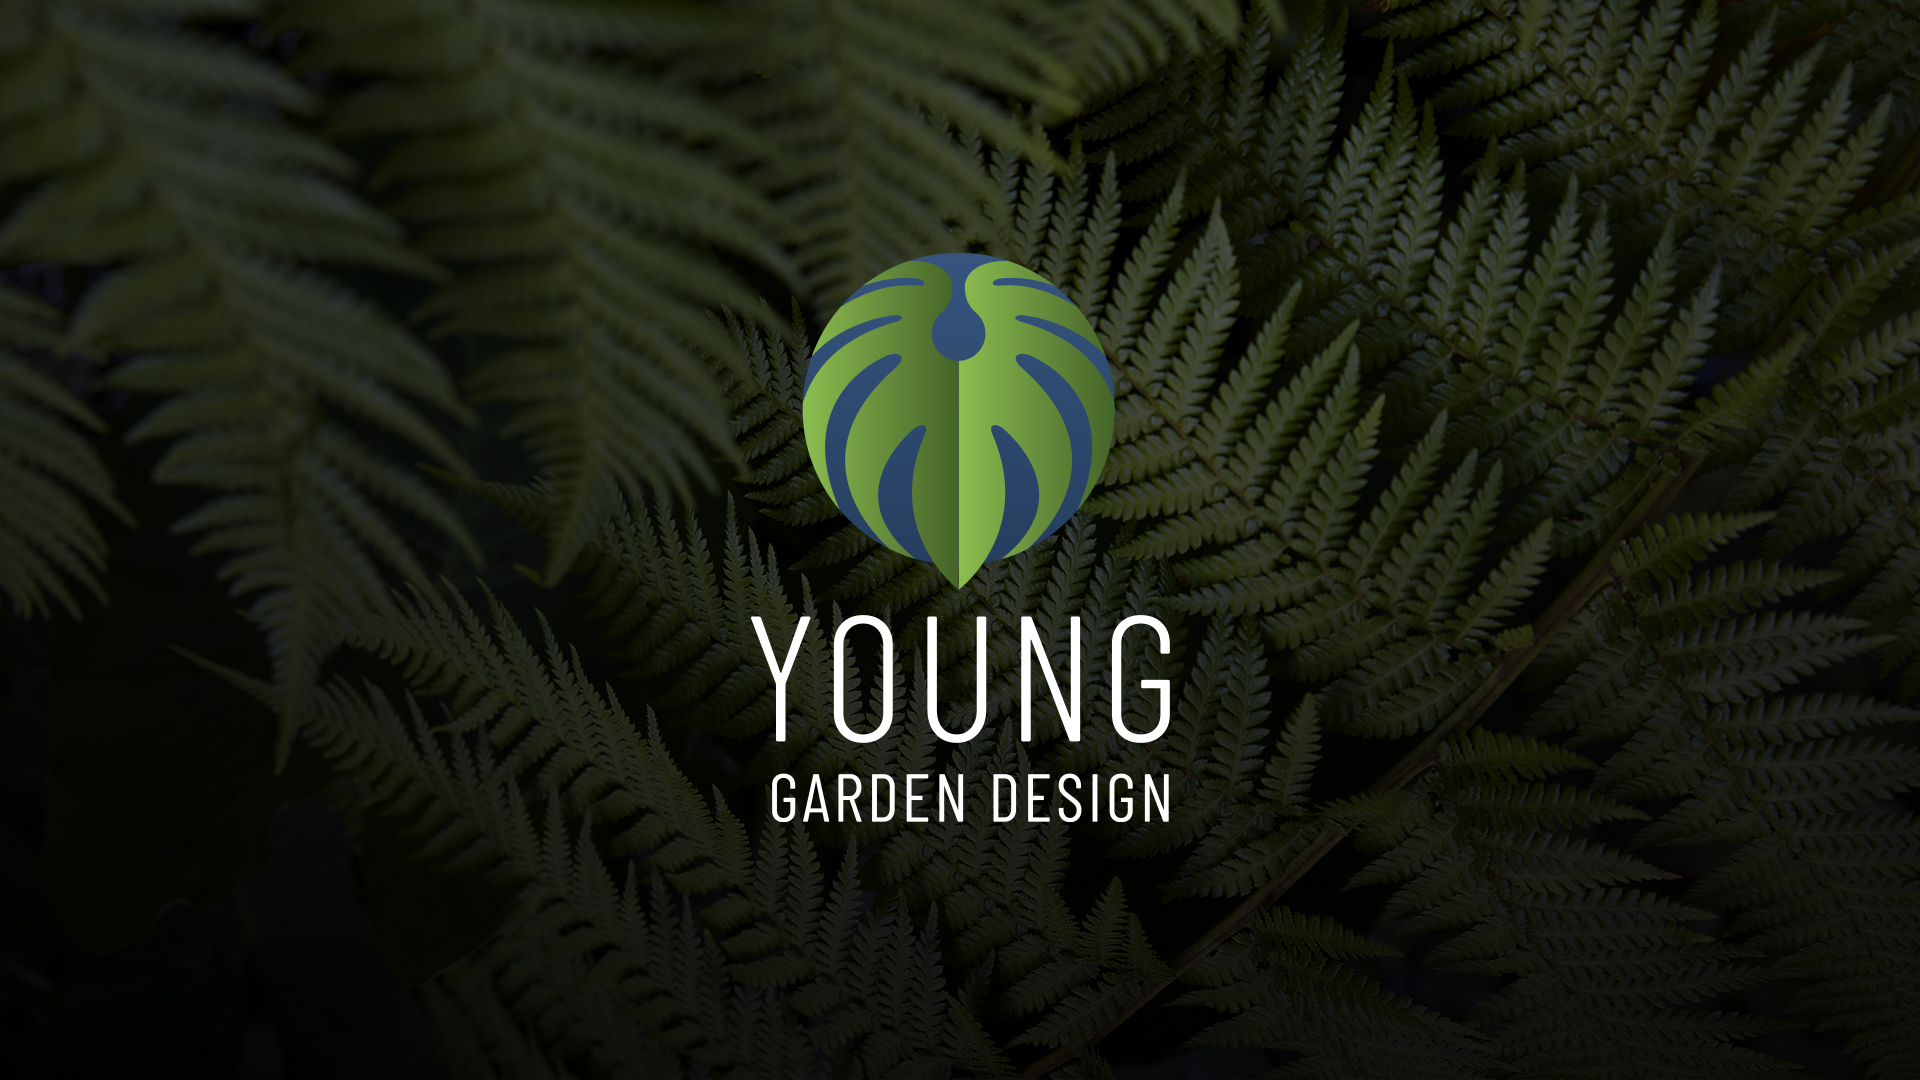 Young Garden Design logo, by MR.SMiTH